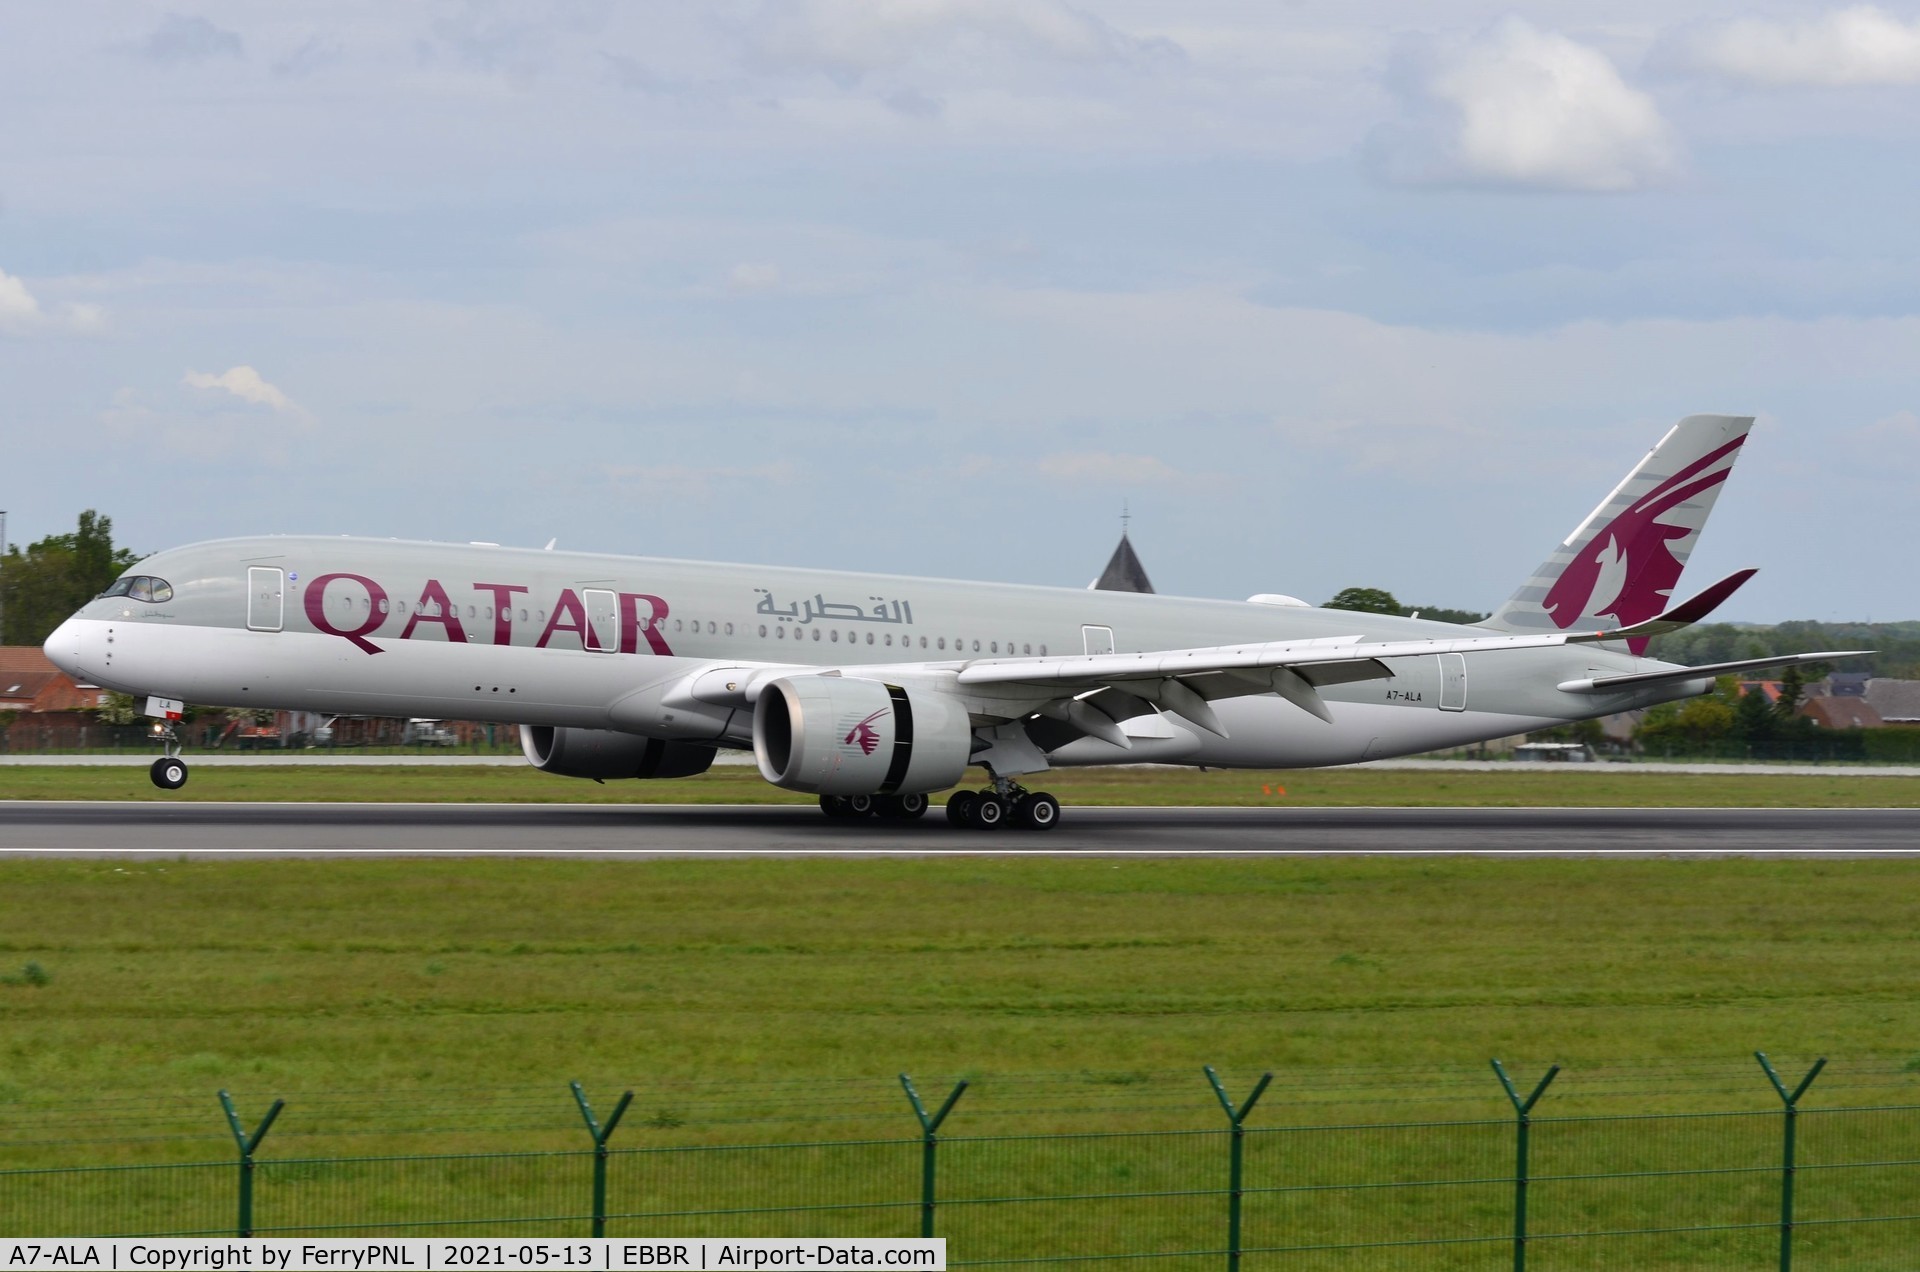 A7-ALA, 2014 Airbus A350-941 C/N 006, Qatar A351 landing